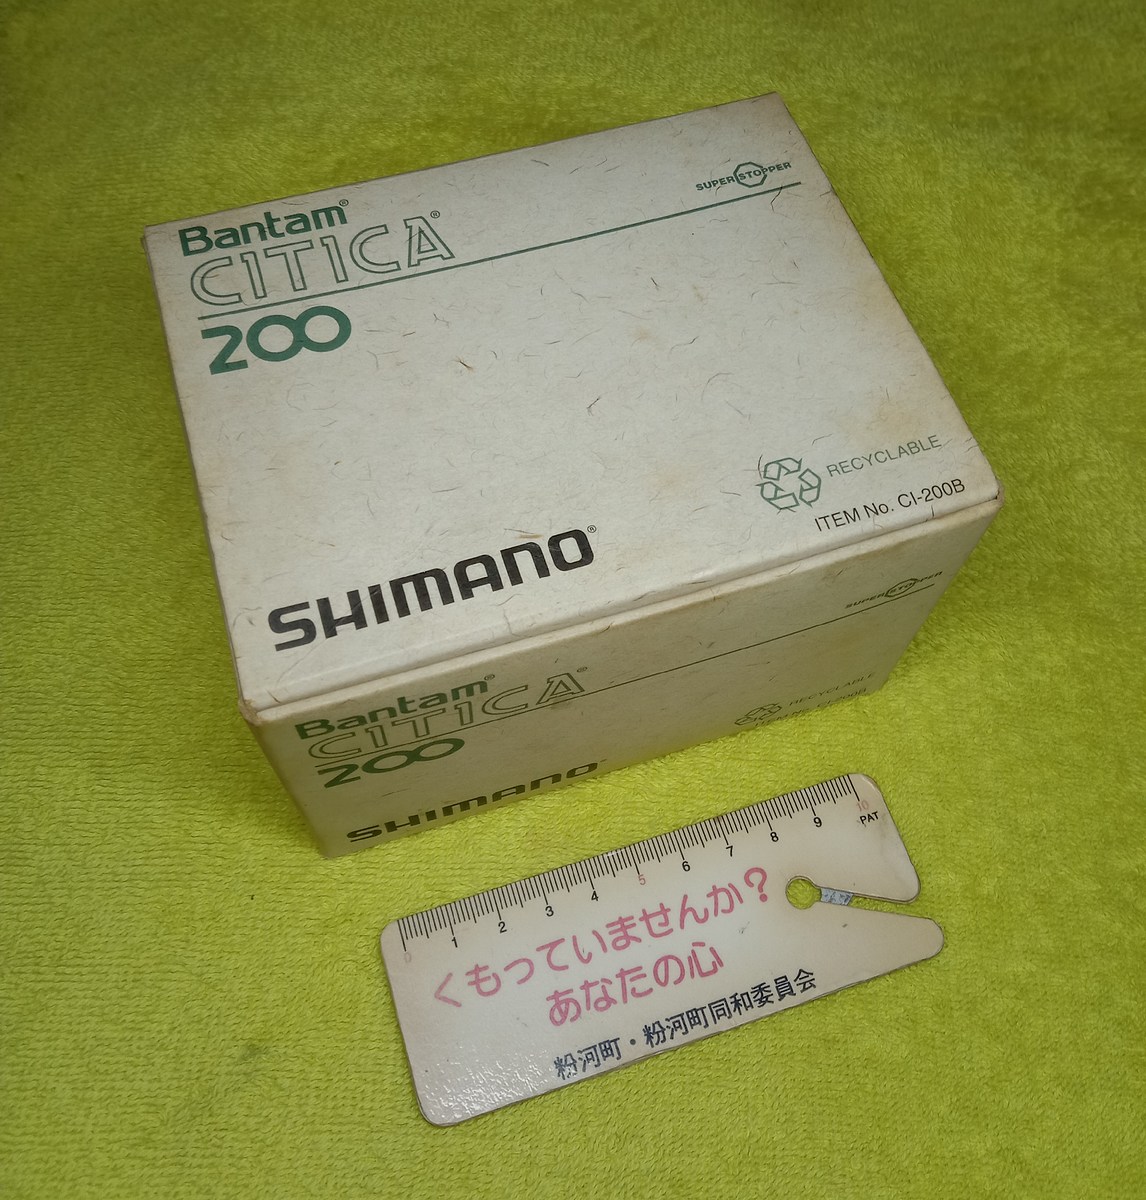 รายการที่ 2. Shimano CITICA 200 สภาพสวย สมบูรณ์ ริ้วรอยน้อย ใช้งานได้ดีทุกระบบ
ราคา 1,800 บ. ส่ง 50